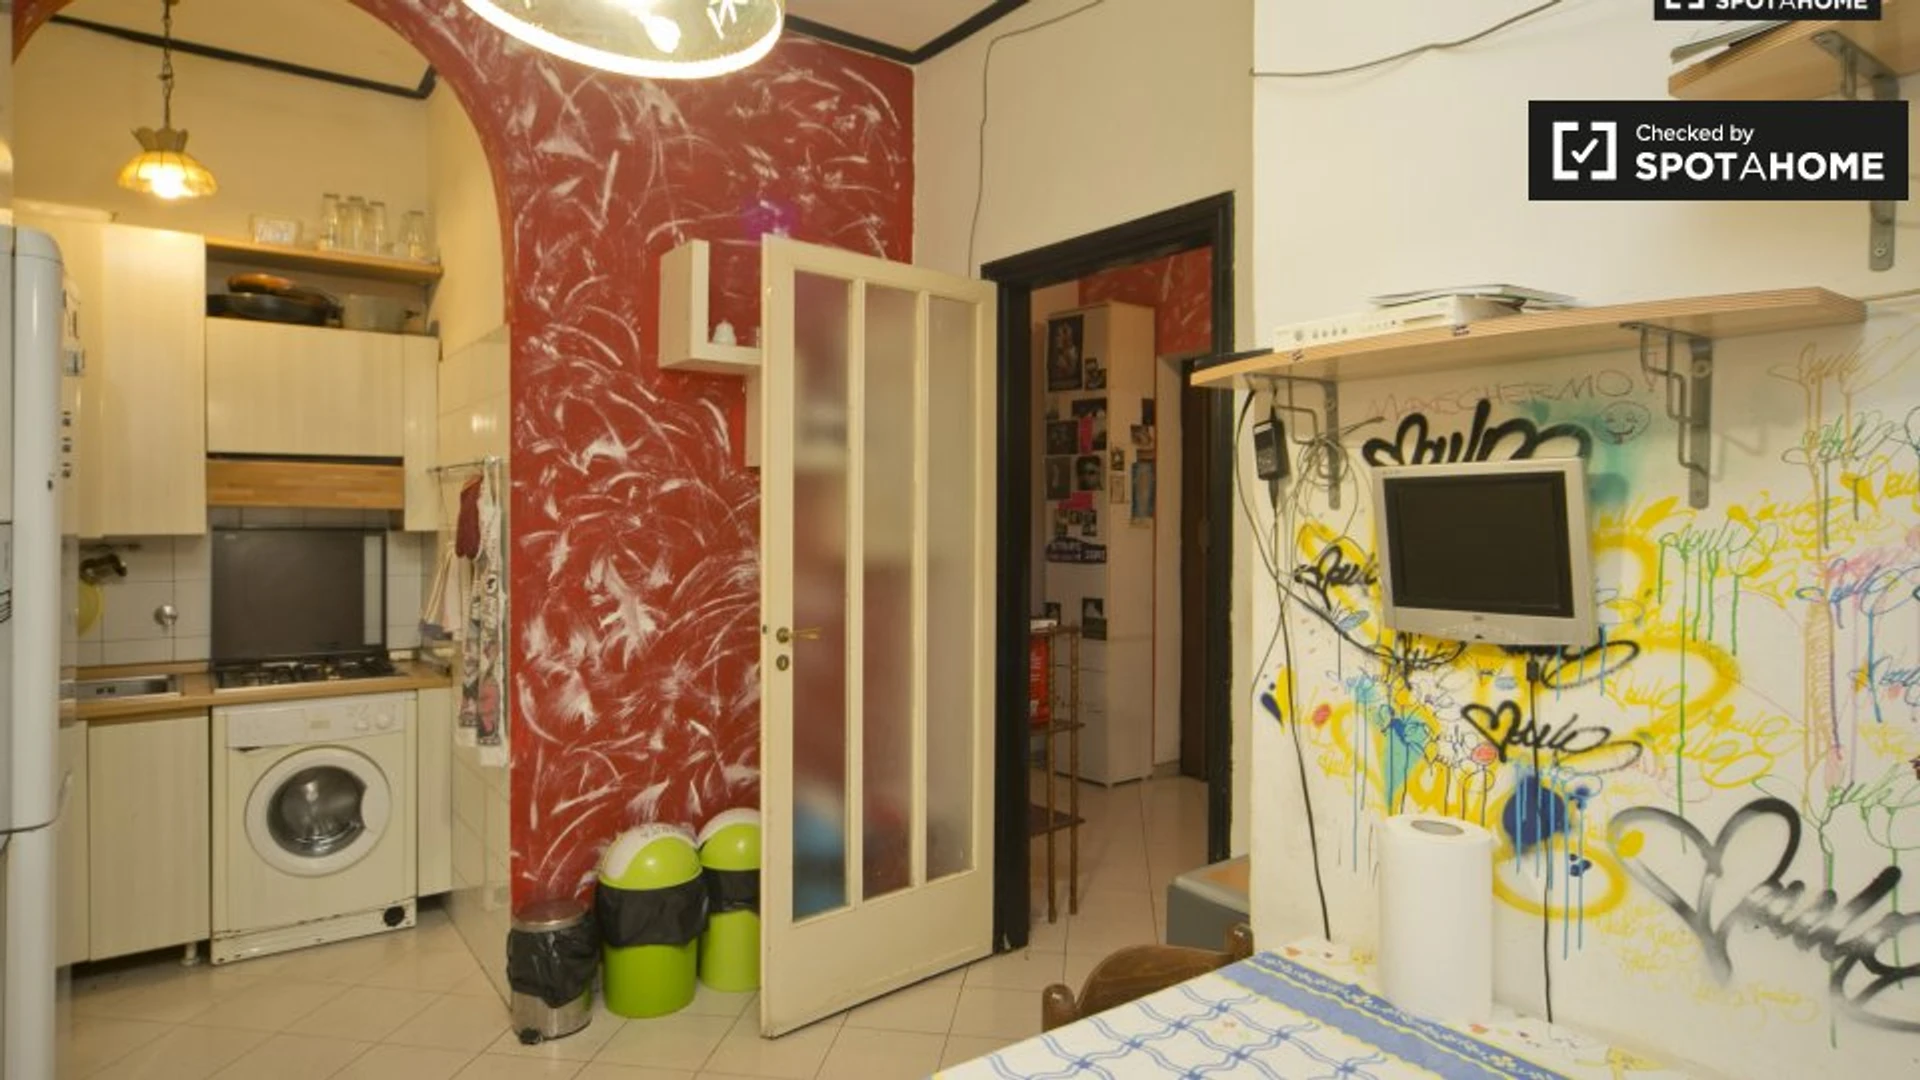 Alquiler de habitación en piso compartido en Turín